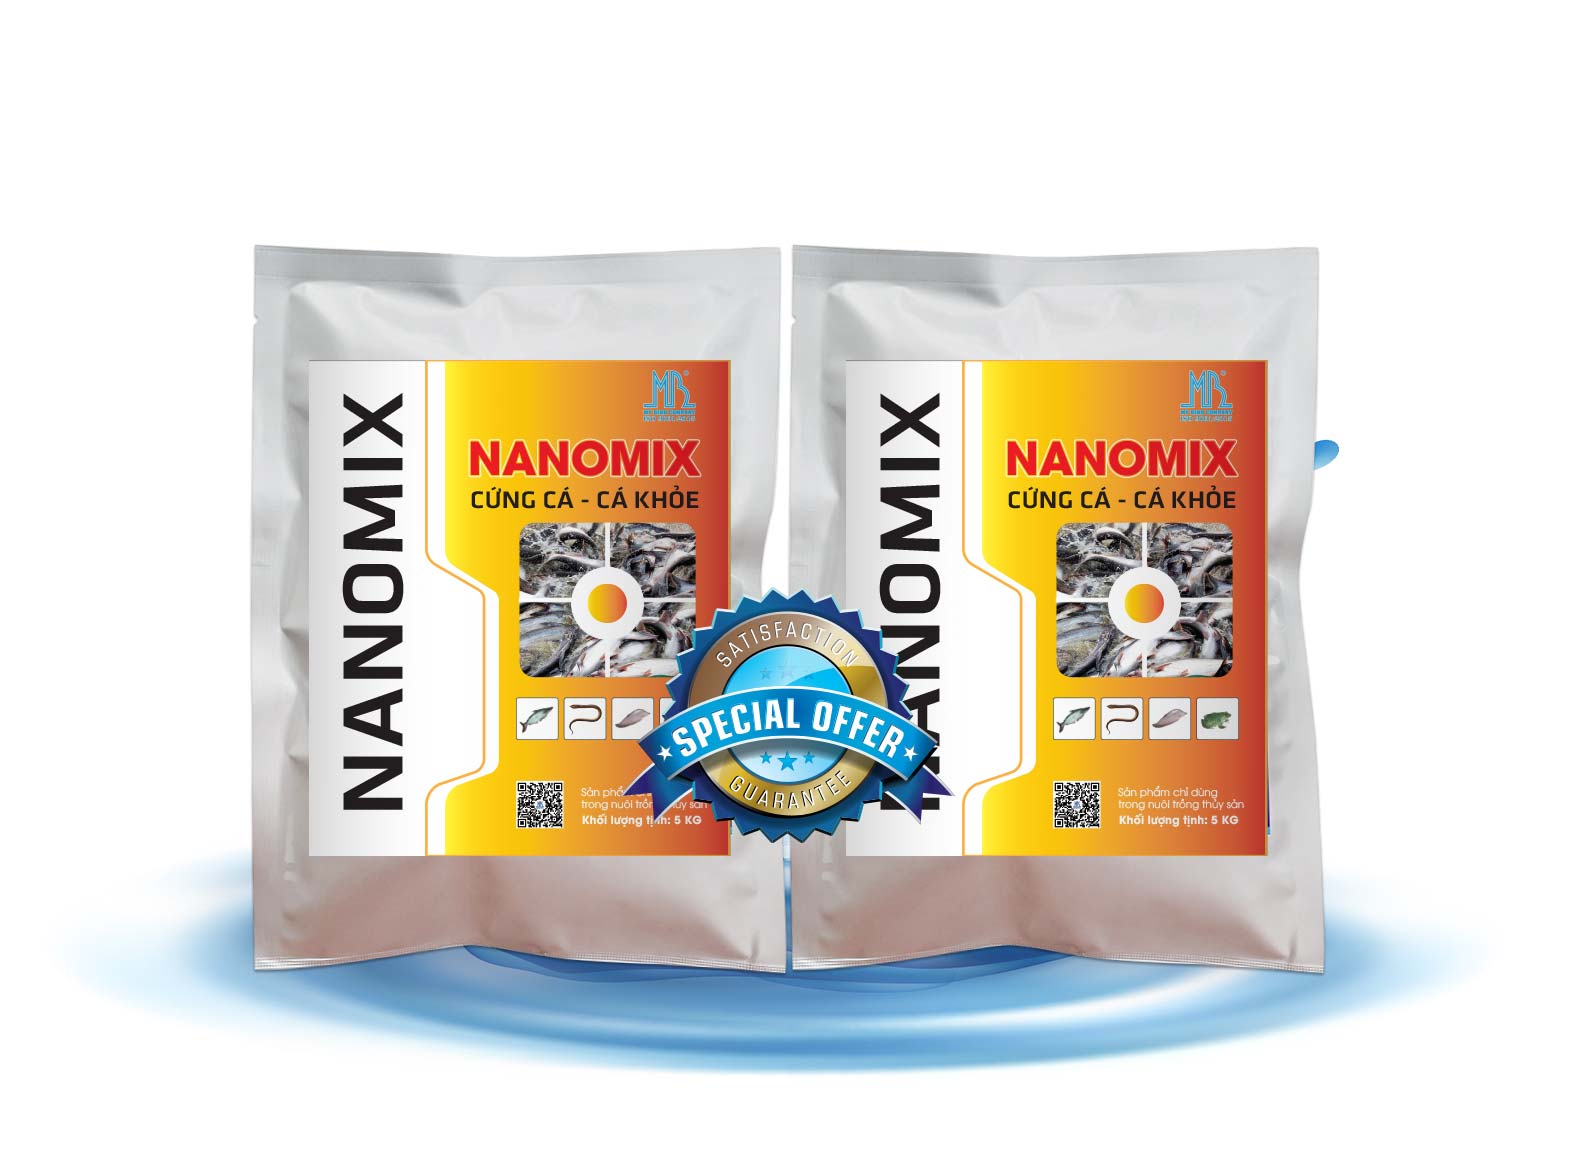 NANOMIX khoáng đa vi lượng chống sốc dành cho cá, cứng cá, cá khỏe